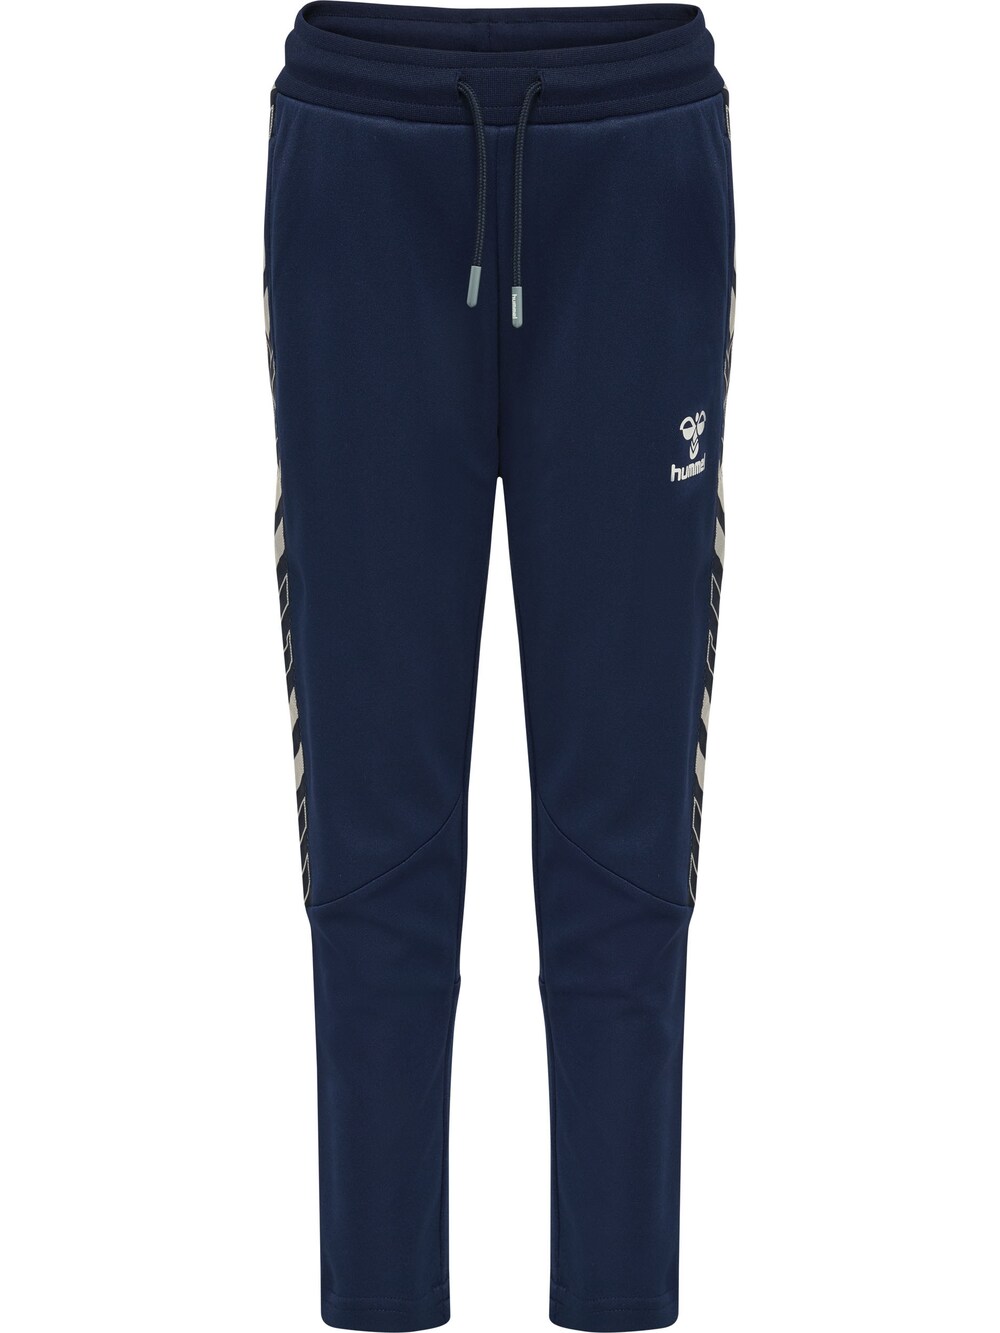 Обычные тренировочные брюки Hummel, ночной синий обычные тренировочные брюки jako ночной синий